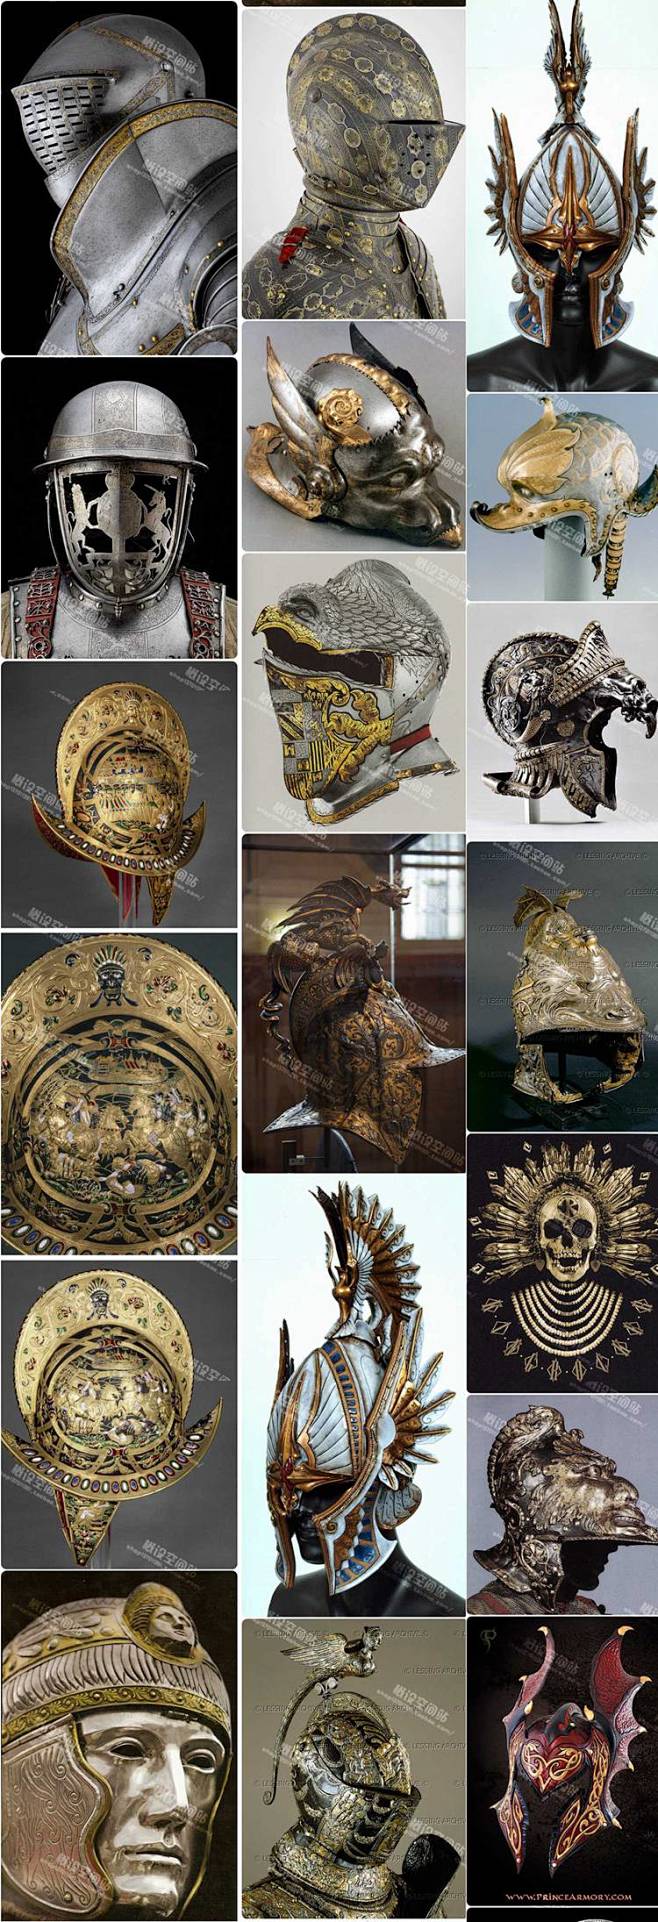 北欧古代中世纪风格鉴赏图集 骑士风 美术...